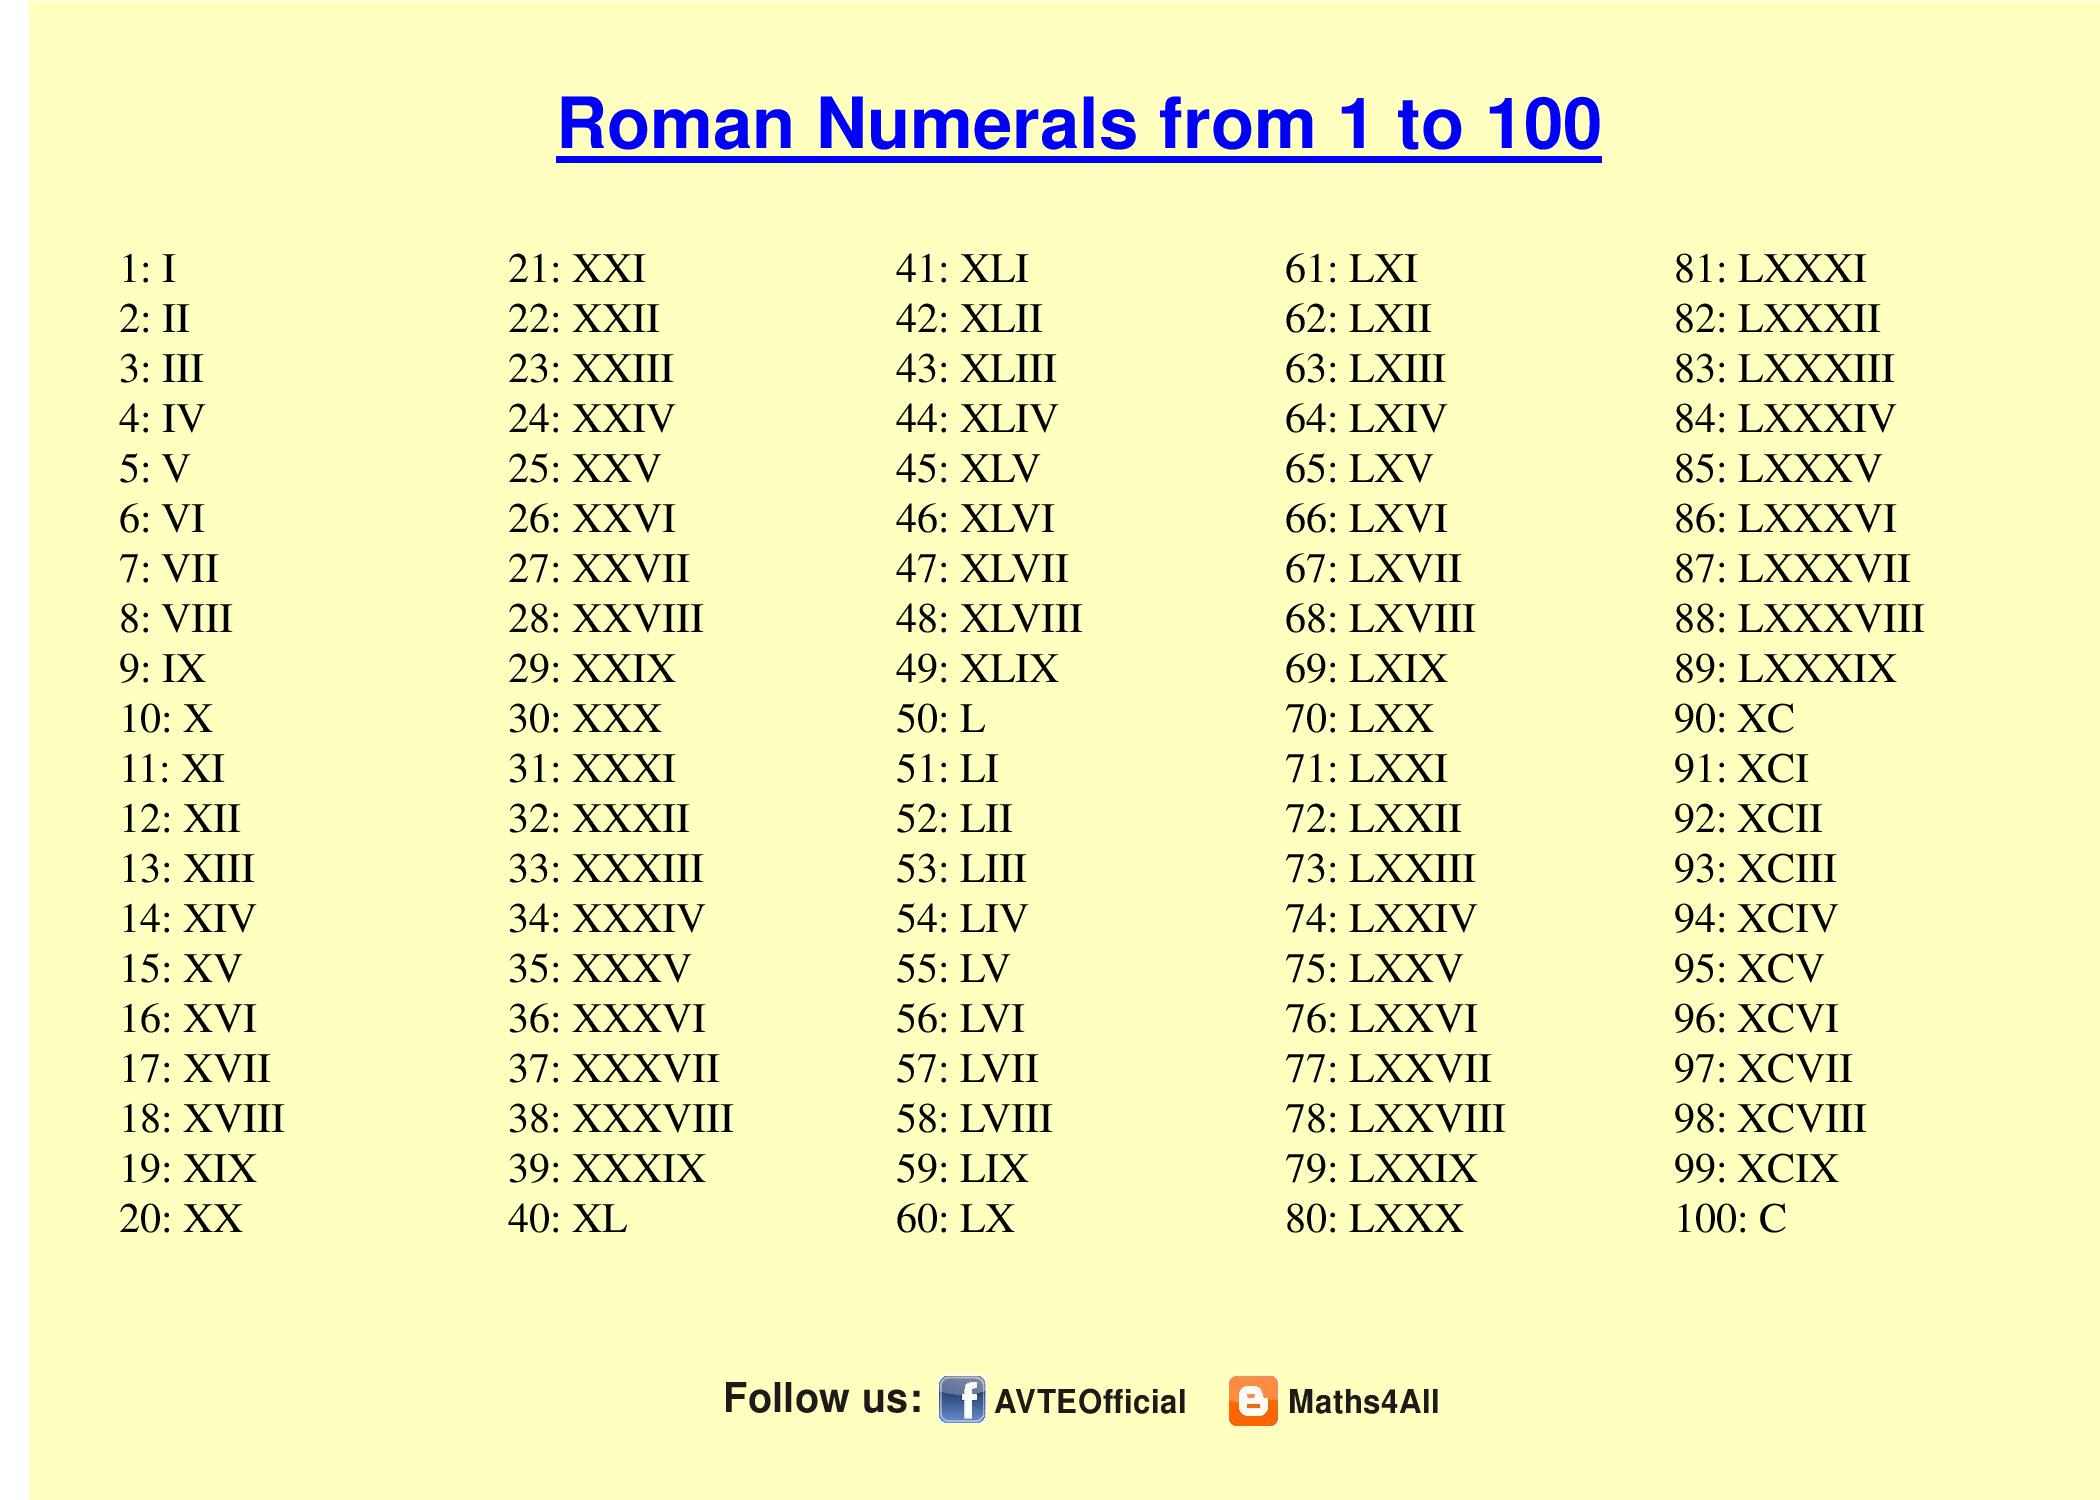 Vll цифра. Римские 1 до 100. Арабские и римские цифры от1 до 100. Римские цифры с переводом на русские цифры от 1-100. Таблица латинских цифр от 1 до 100.